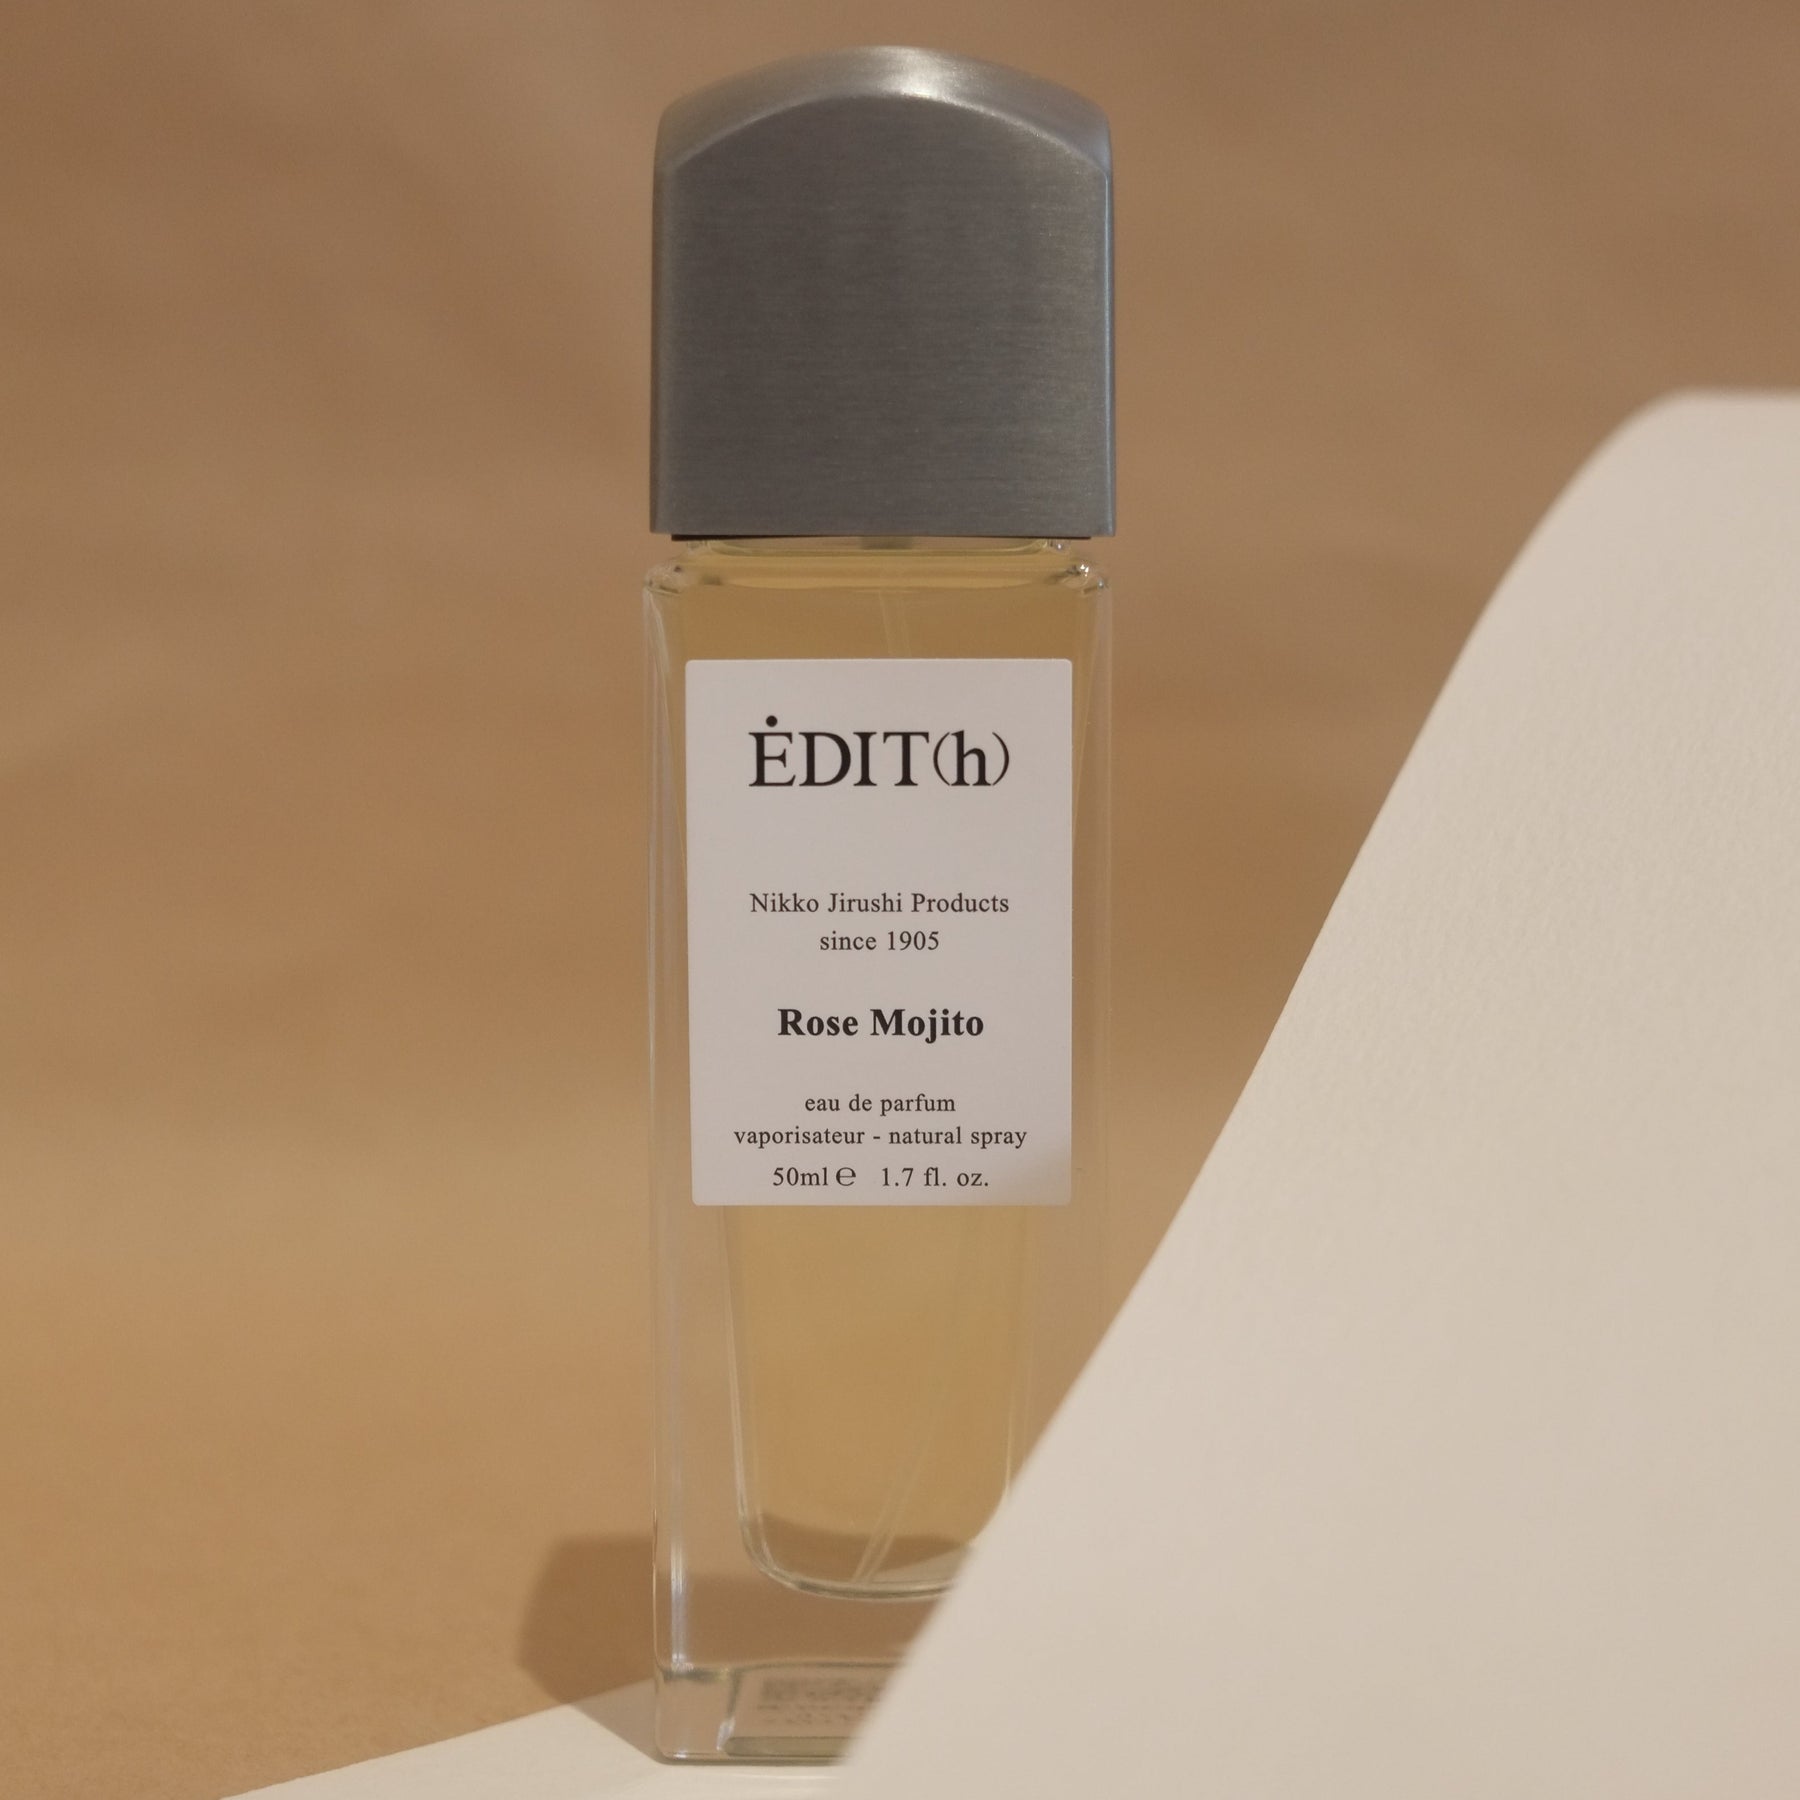 EDIT(h) Rose Mojito Eau de Parfum – Normcore Fragrance